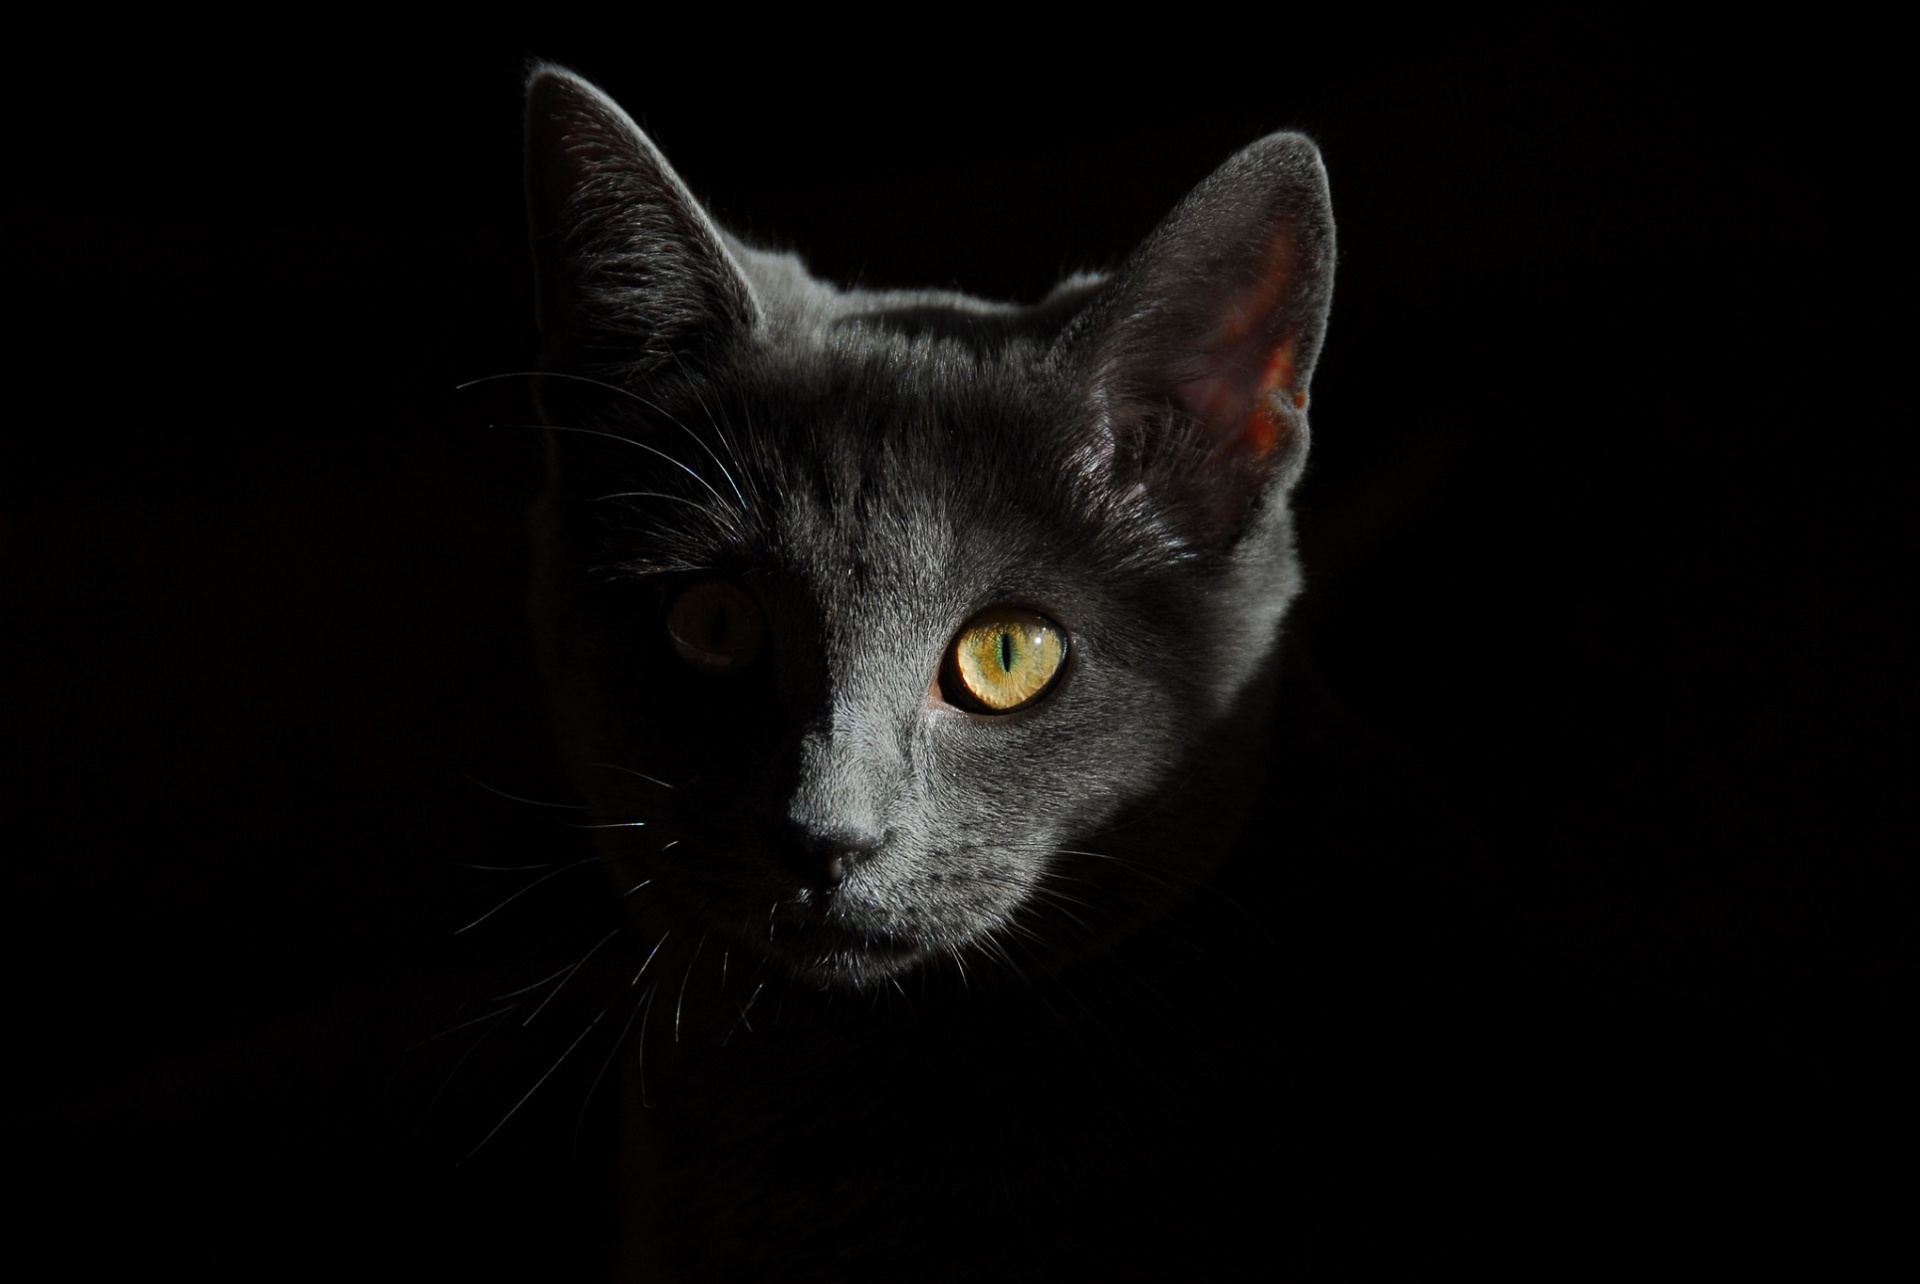 Velkolepý portrét Cat